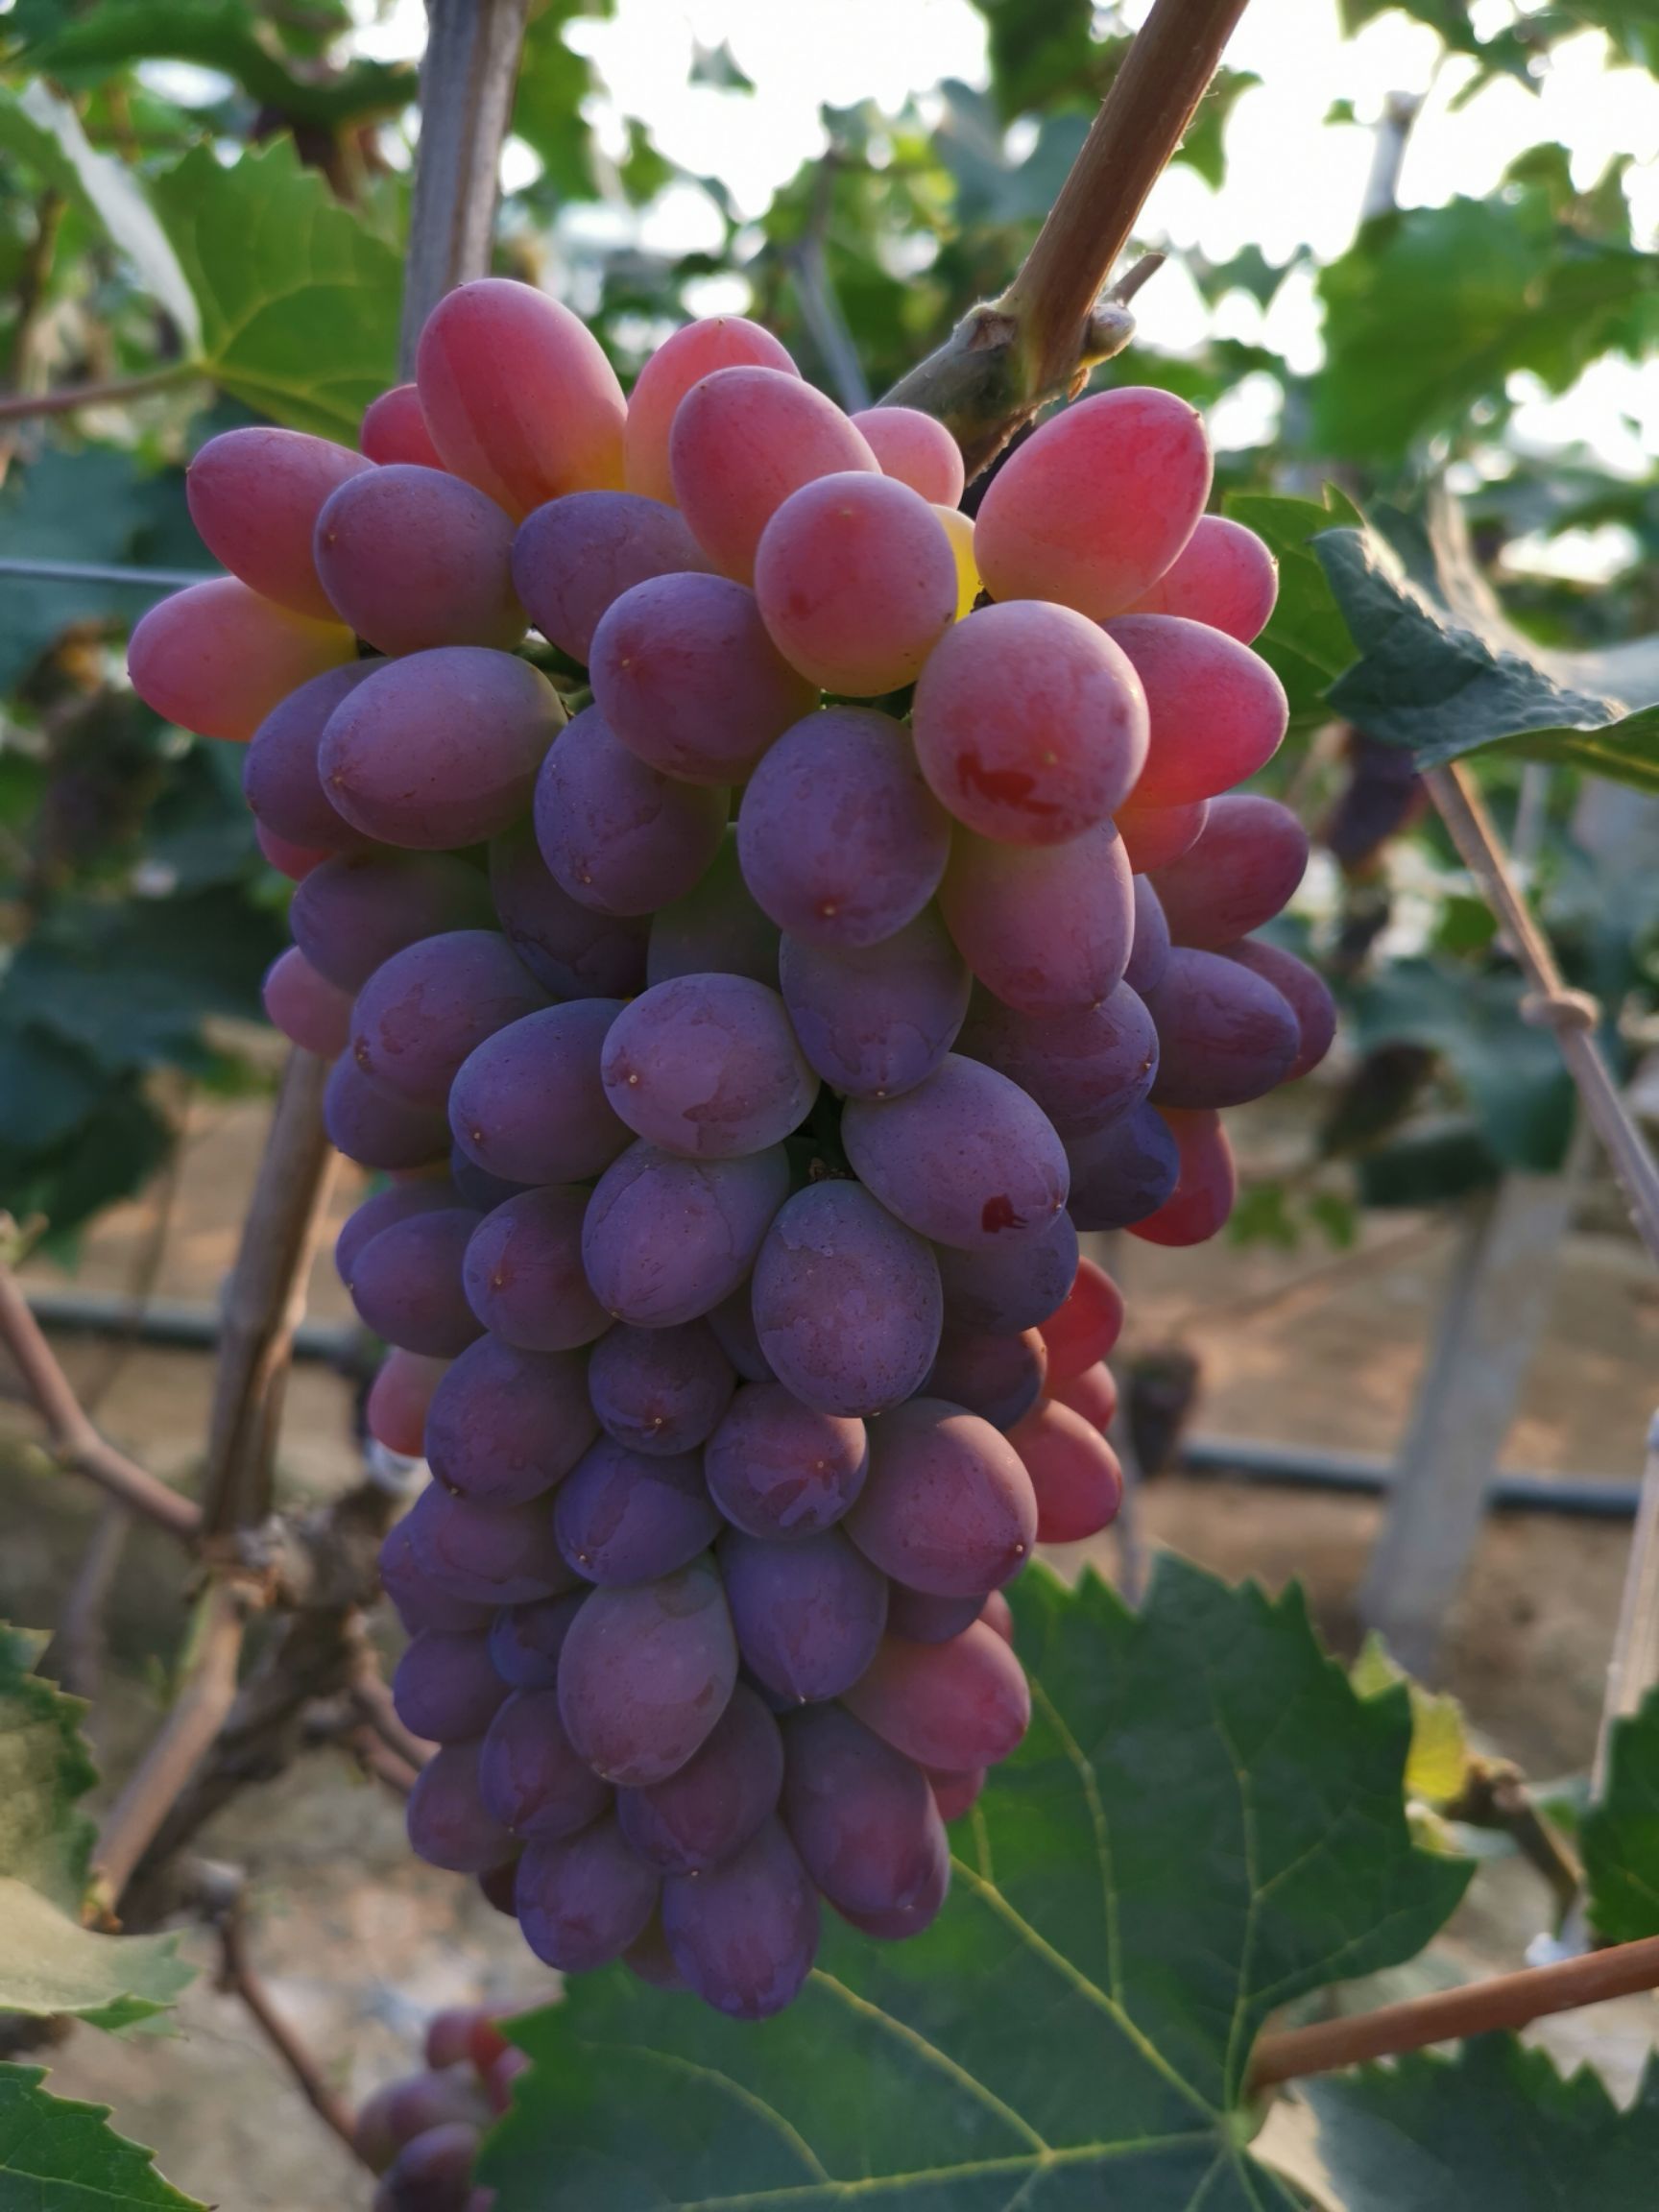 茉莉香葡萄 1.5- 2斤 5%以下 1次果